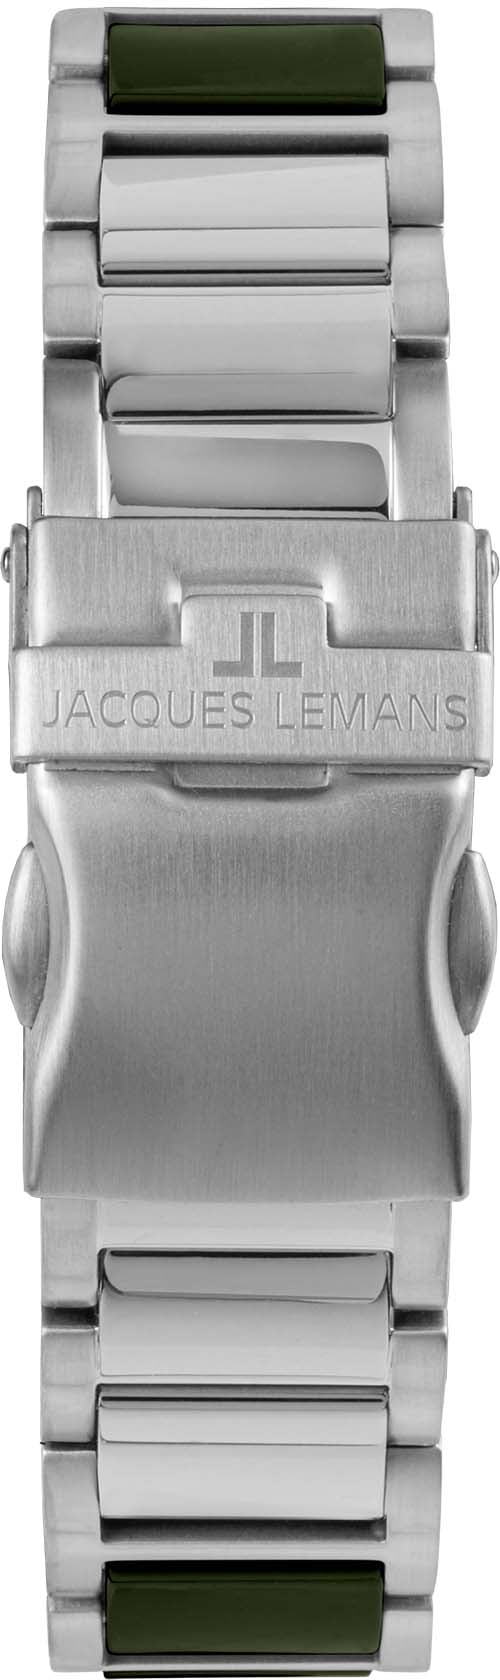 Jacques Lemans Keramikuhr »Liverpool, 42-10C« online kaufen BAUR 